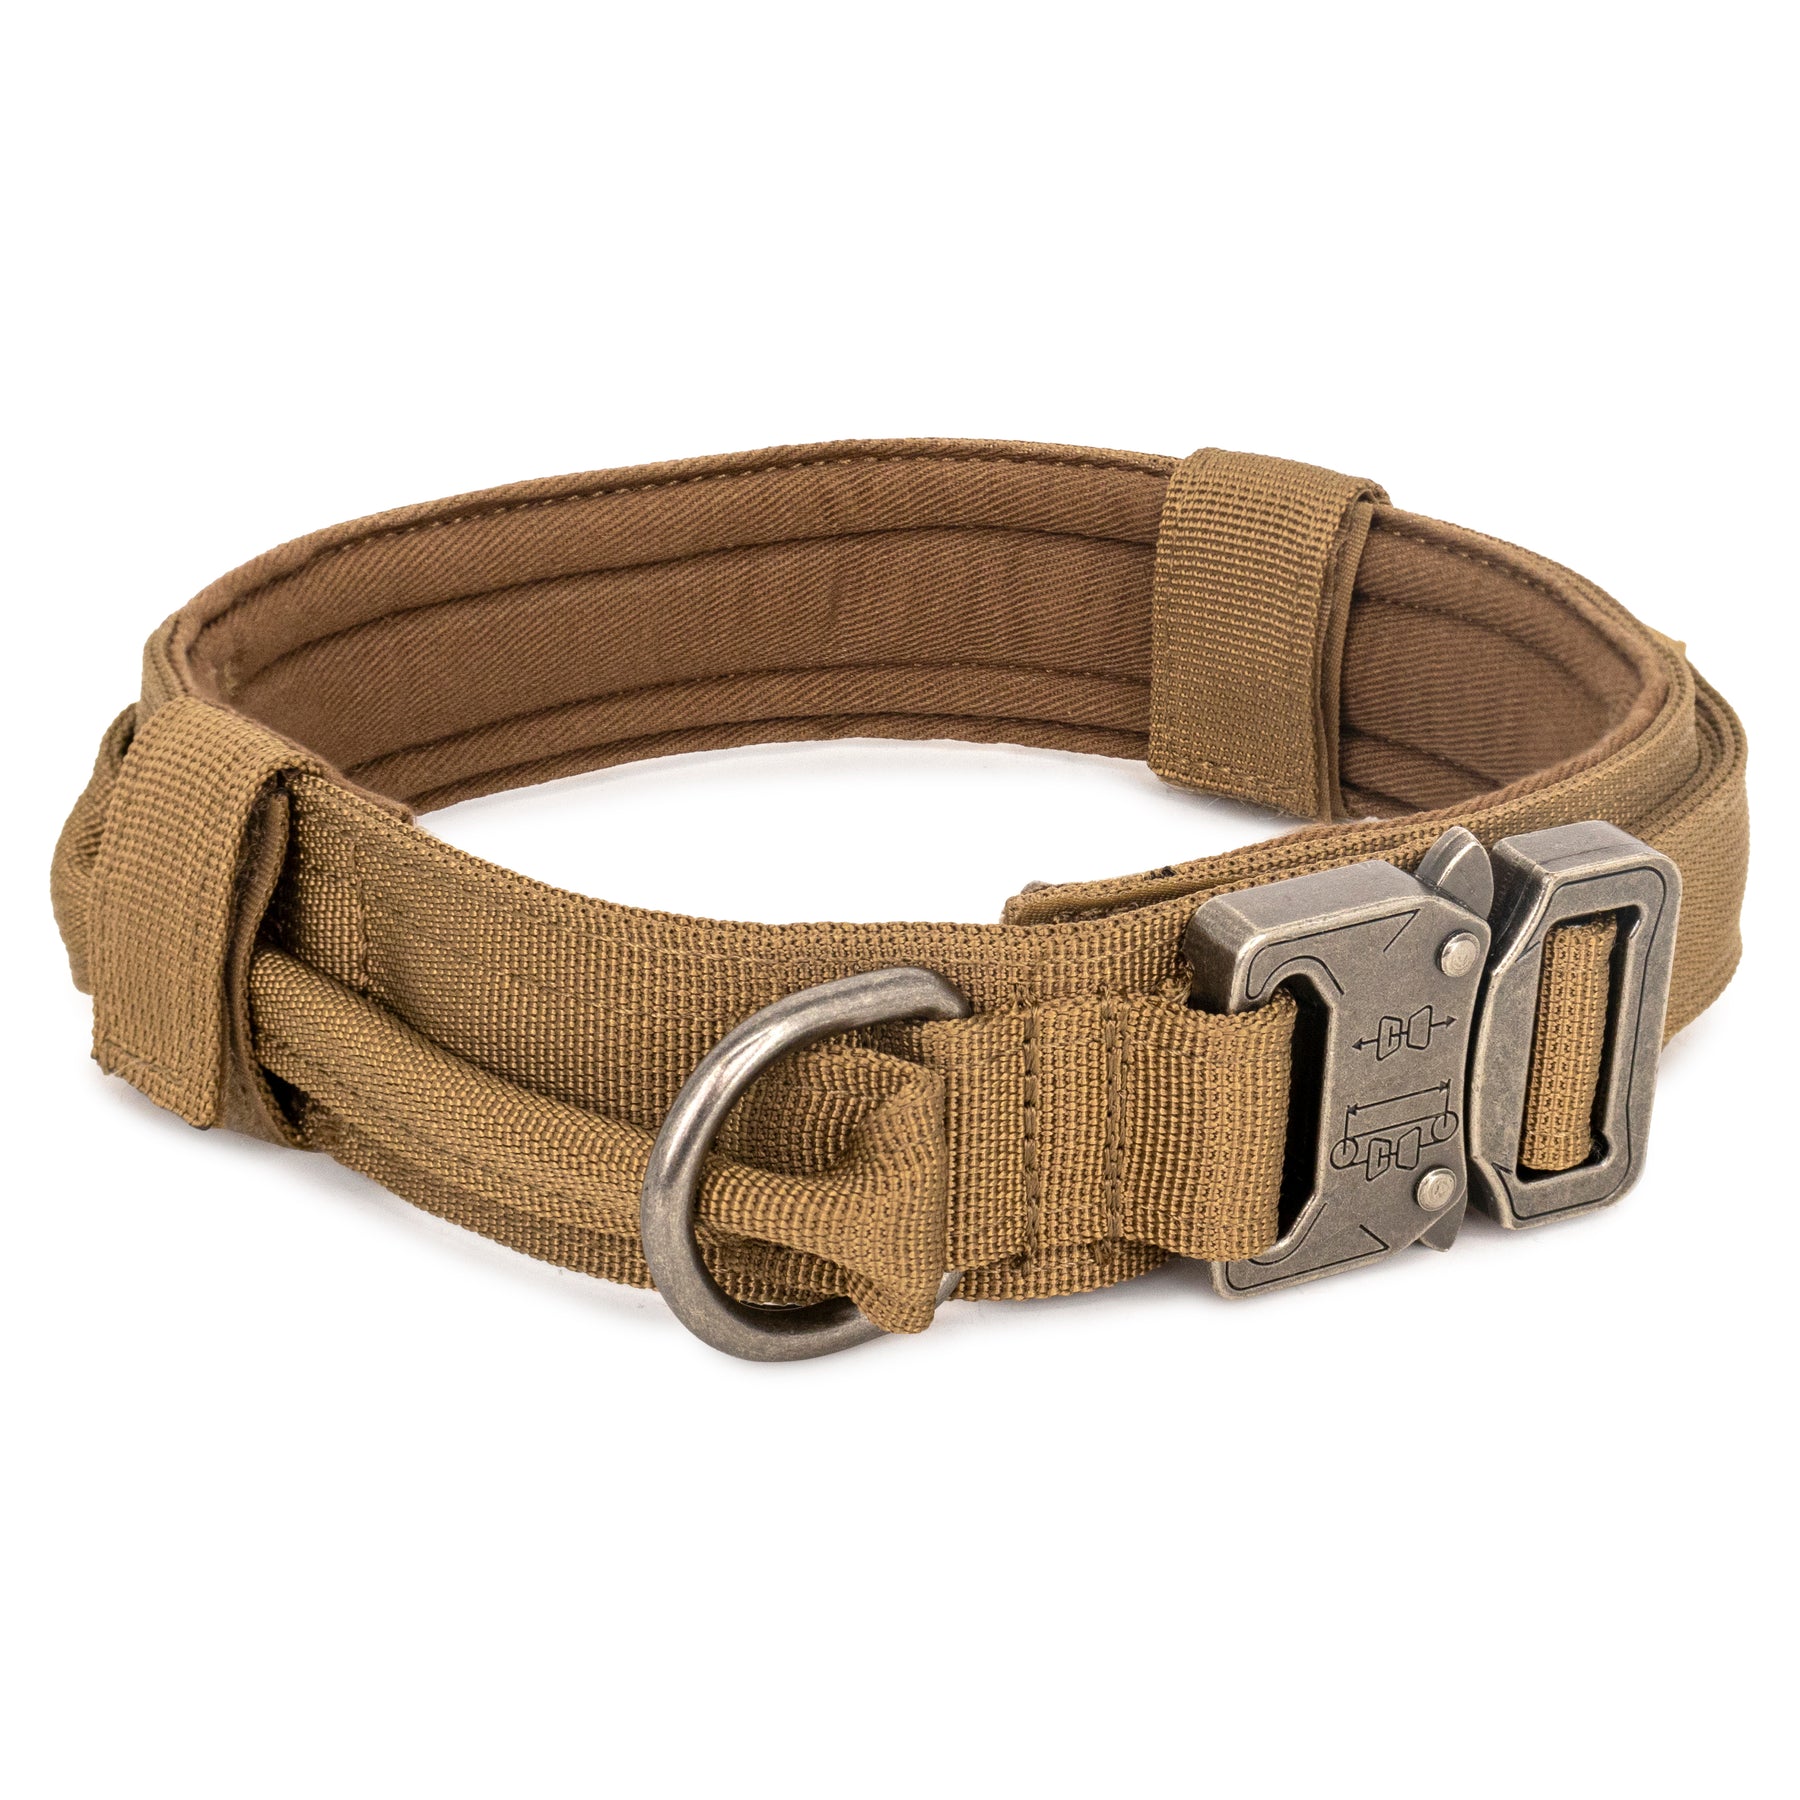 Tactical Dog Collar, Made In the USA 🇺🇸 – Shark Fin Gear Company